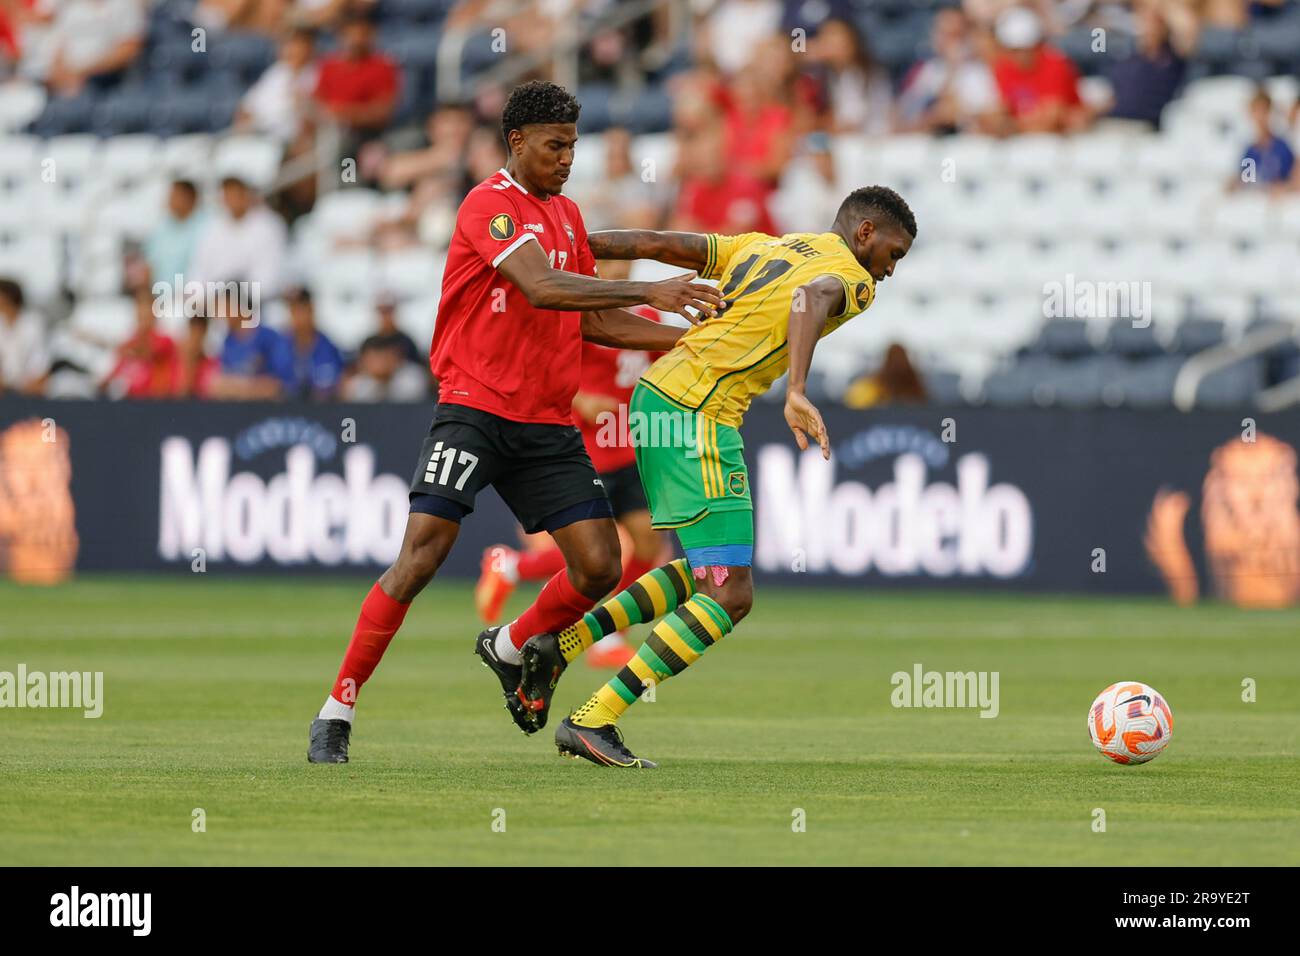 St. Louis, MO. USA: Trinidad und Tobago, Mittelfeldspieler Andre Rampersad (17), drängt Jamaika-Verteidiger Damion Lowe (17), während er versucht, den Ball du zu stehlen Stockfoto